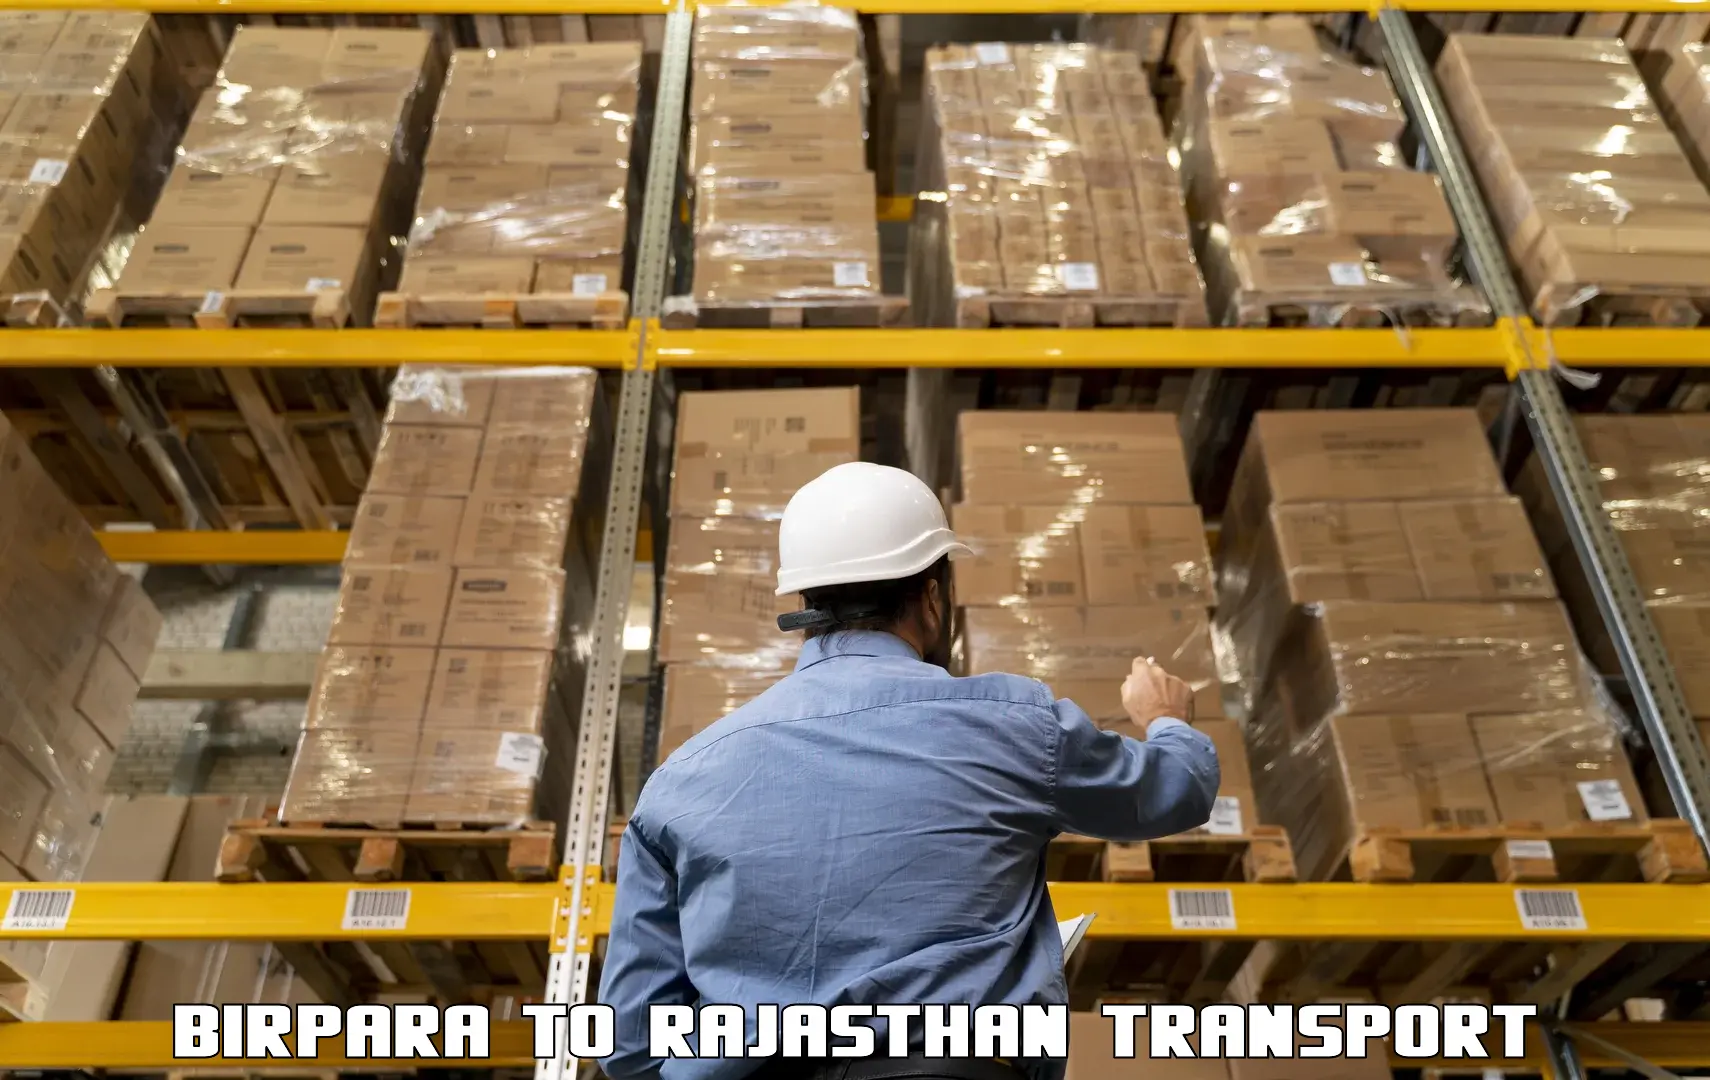 Shipping partner Birpara to Rajasthan